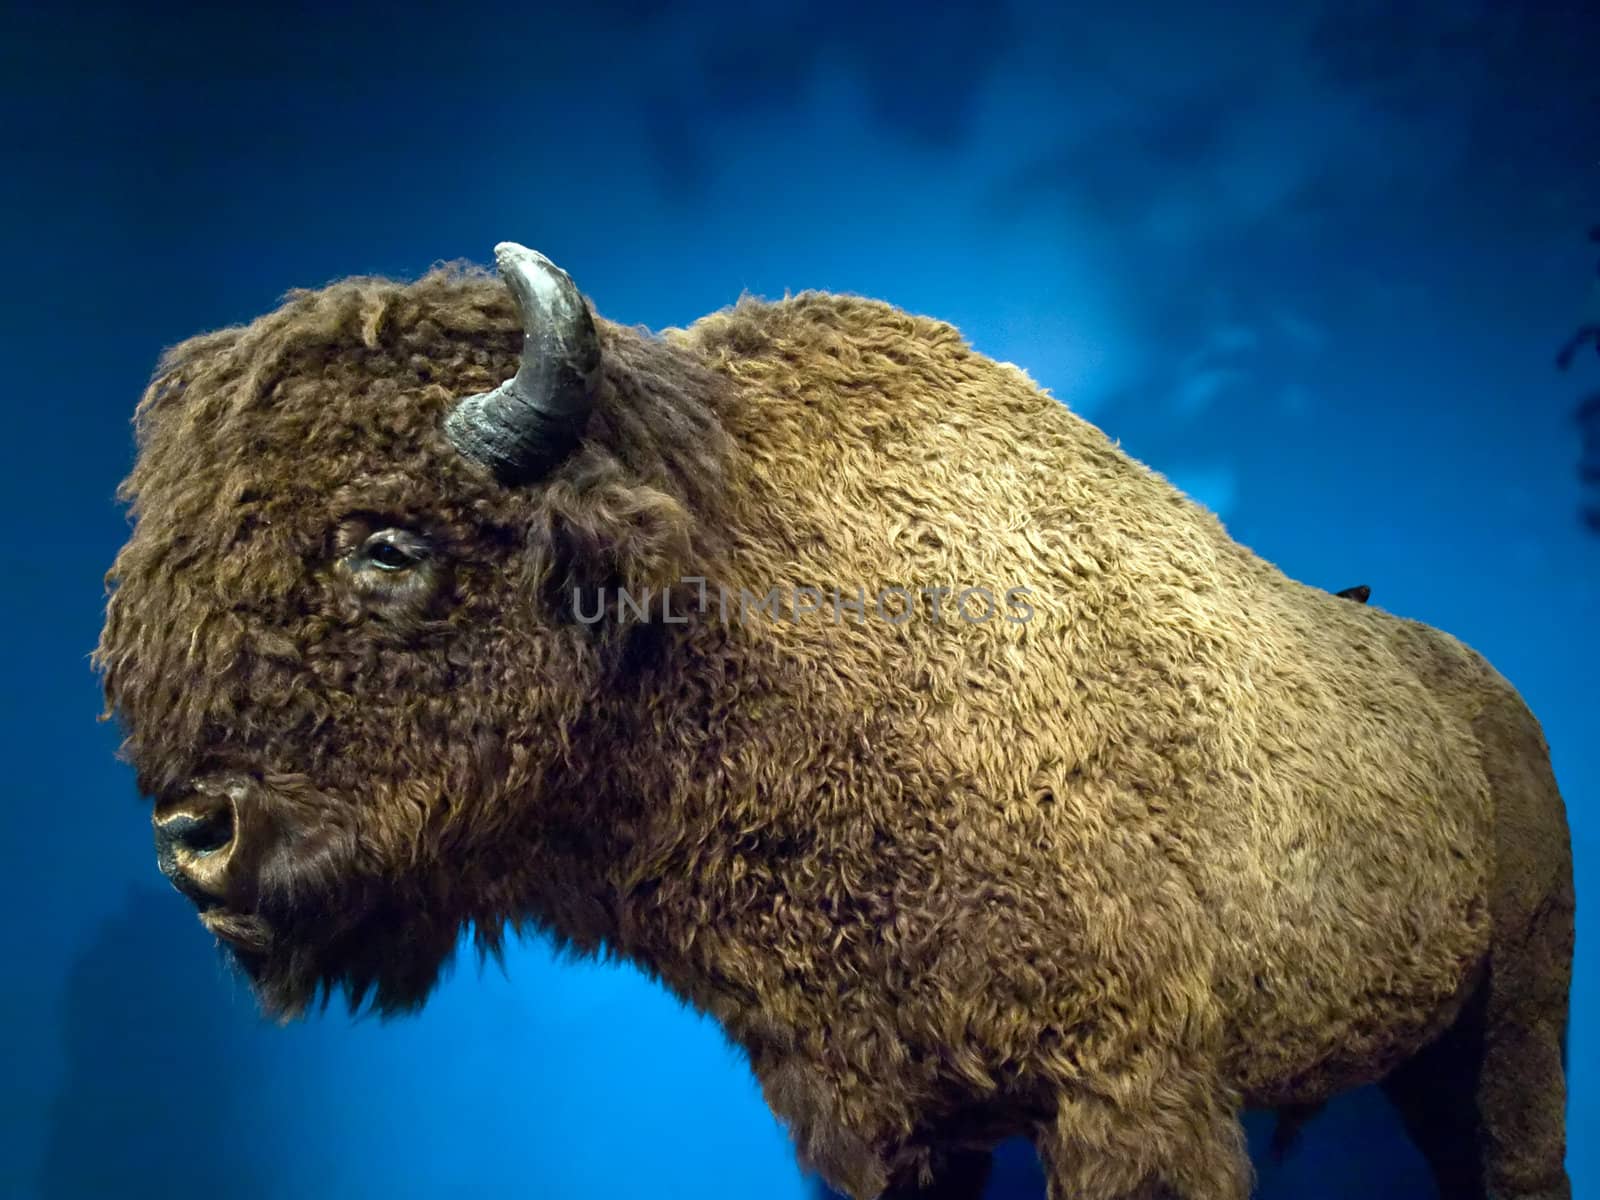 Buffalo on Blue by watamyr